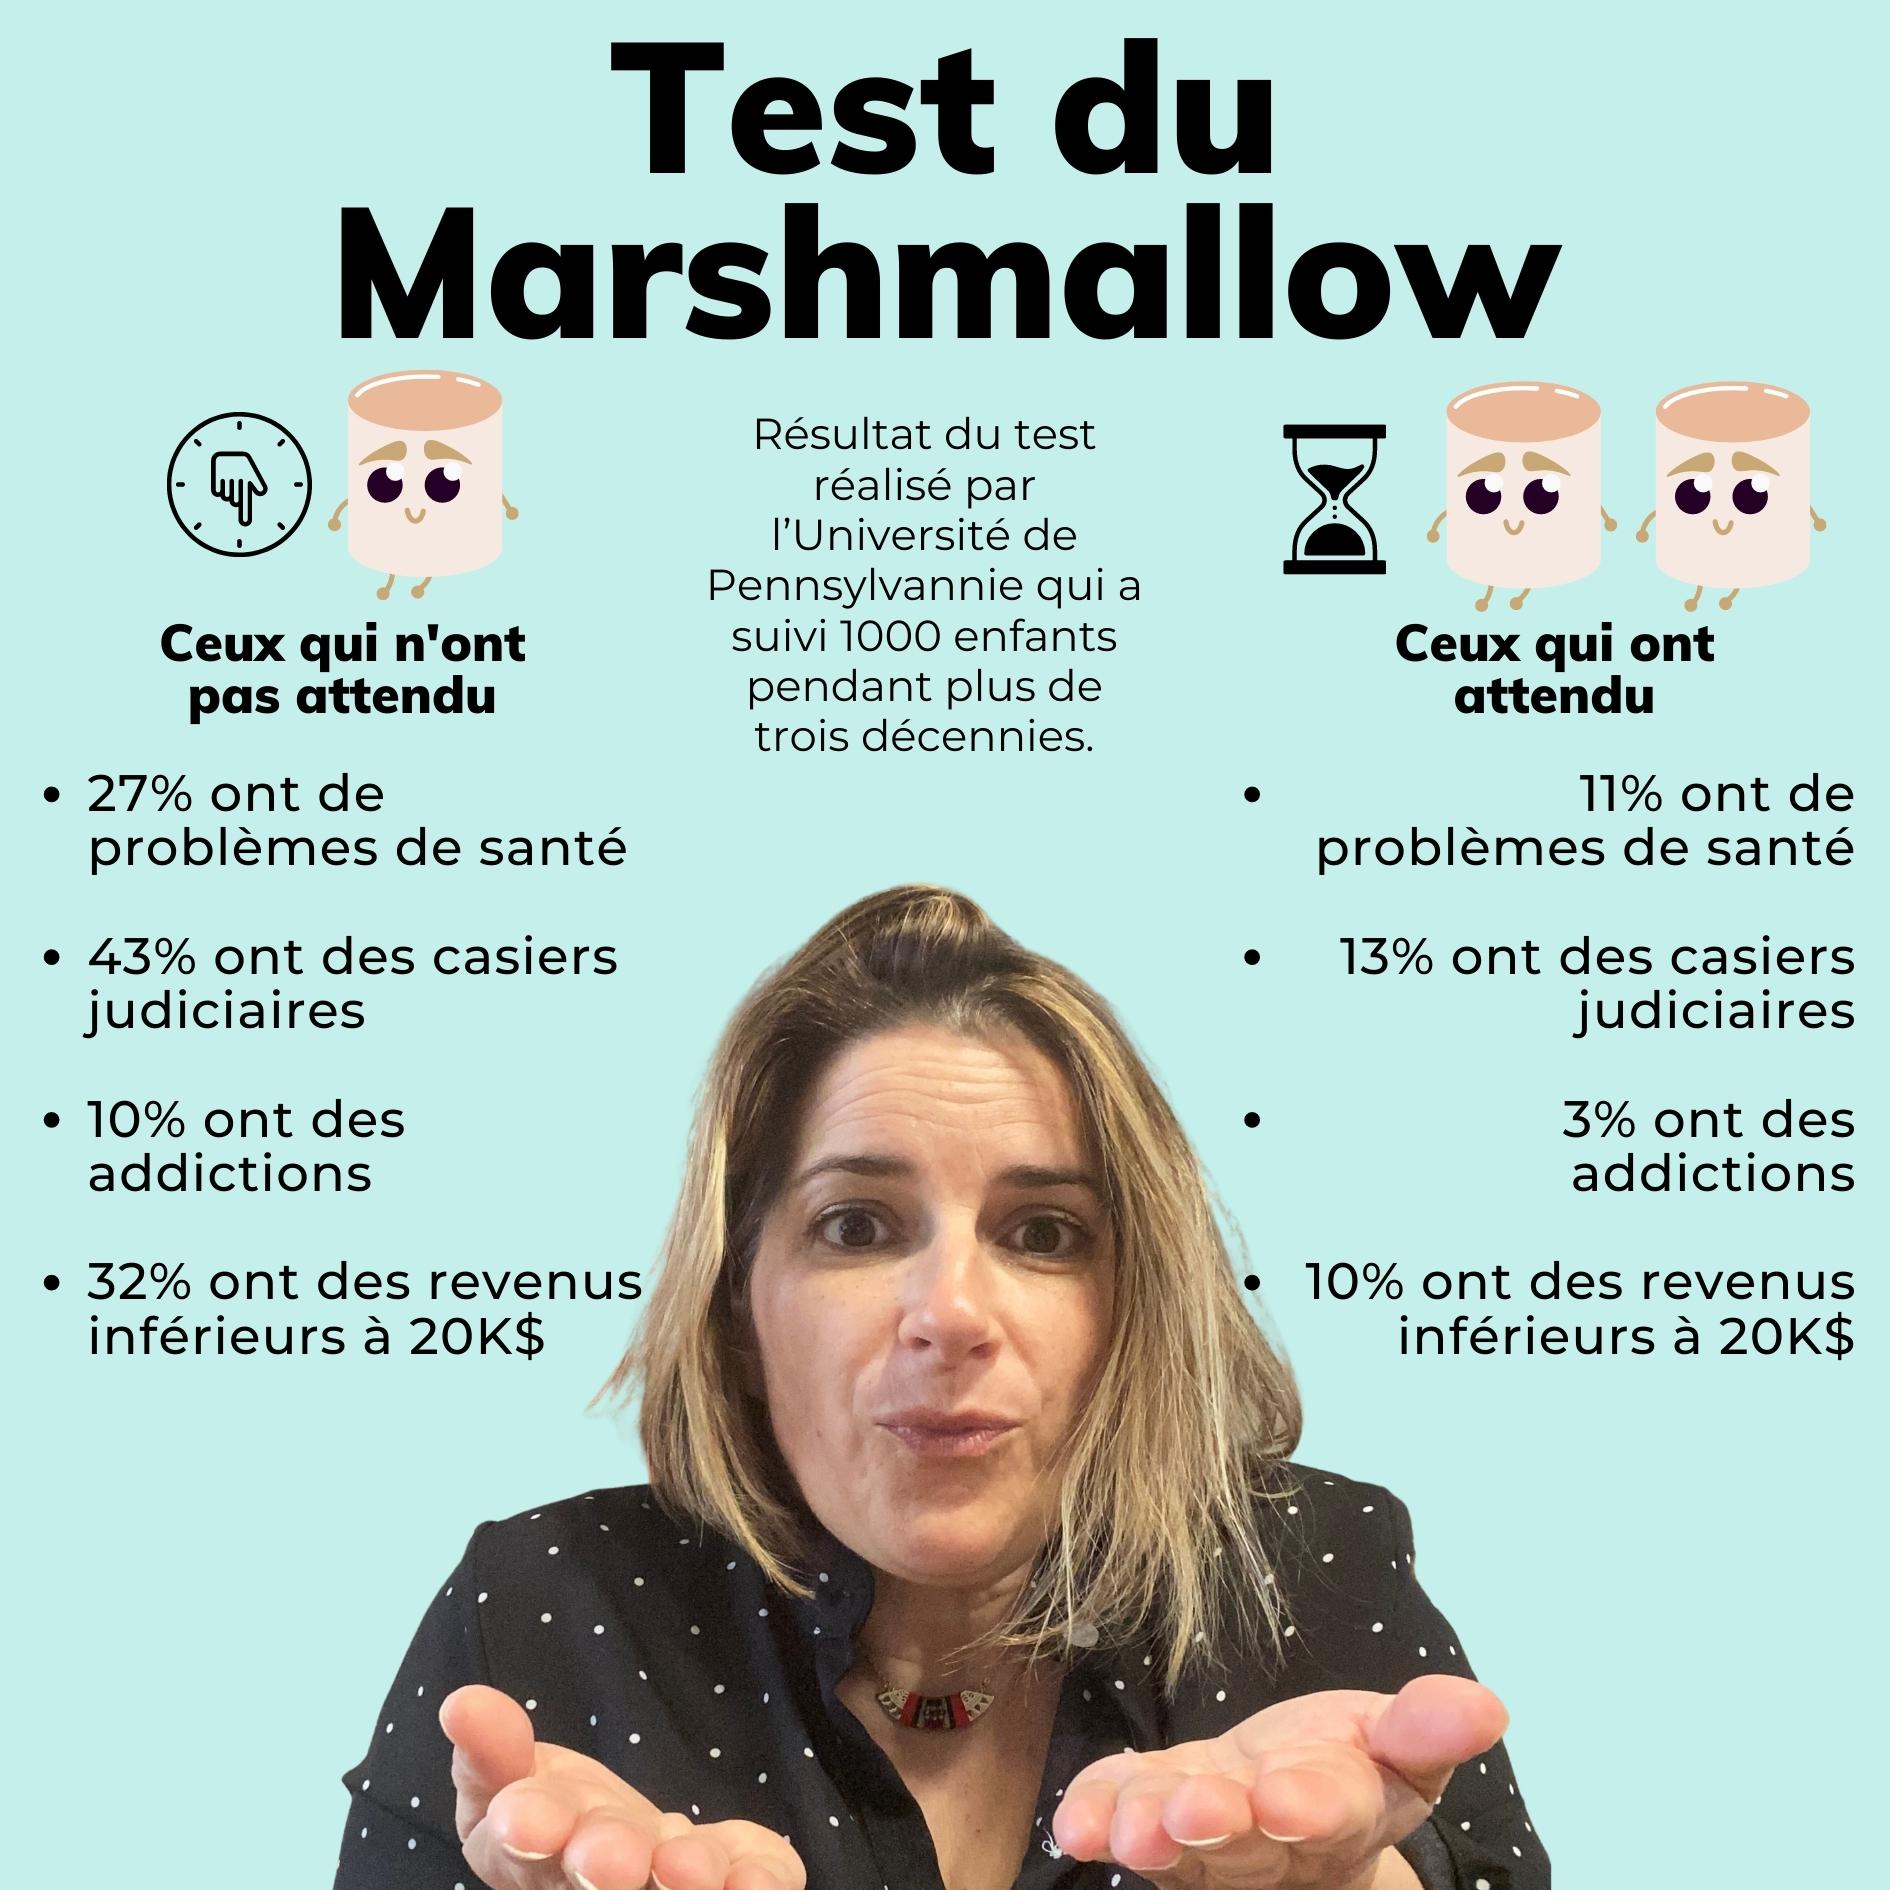 TEST DU MARSHMALLOW